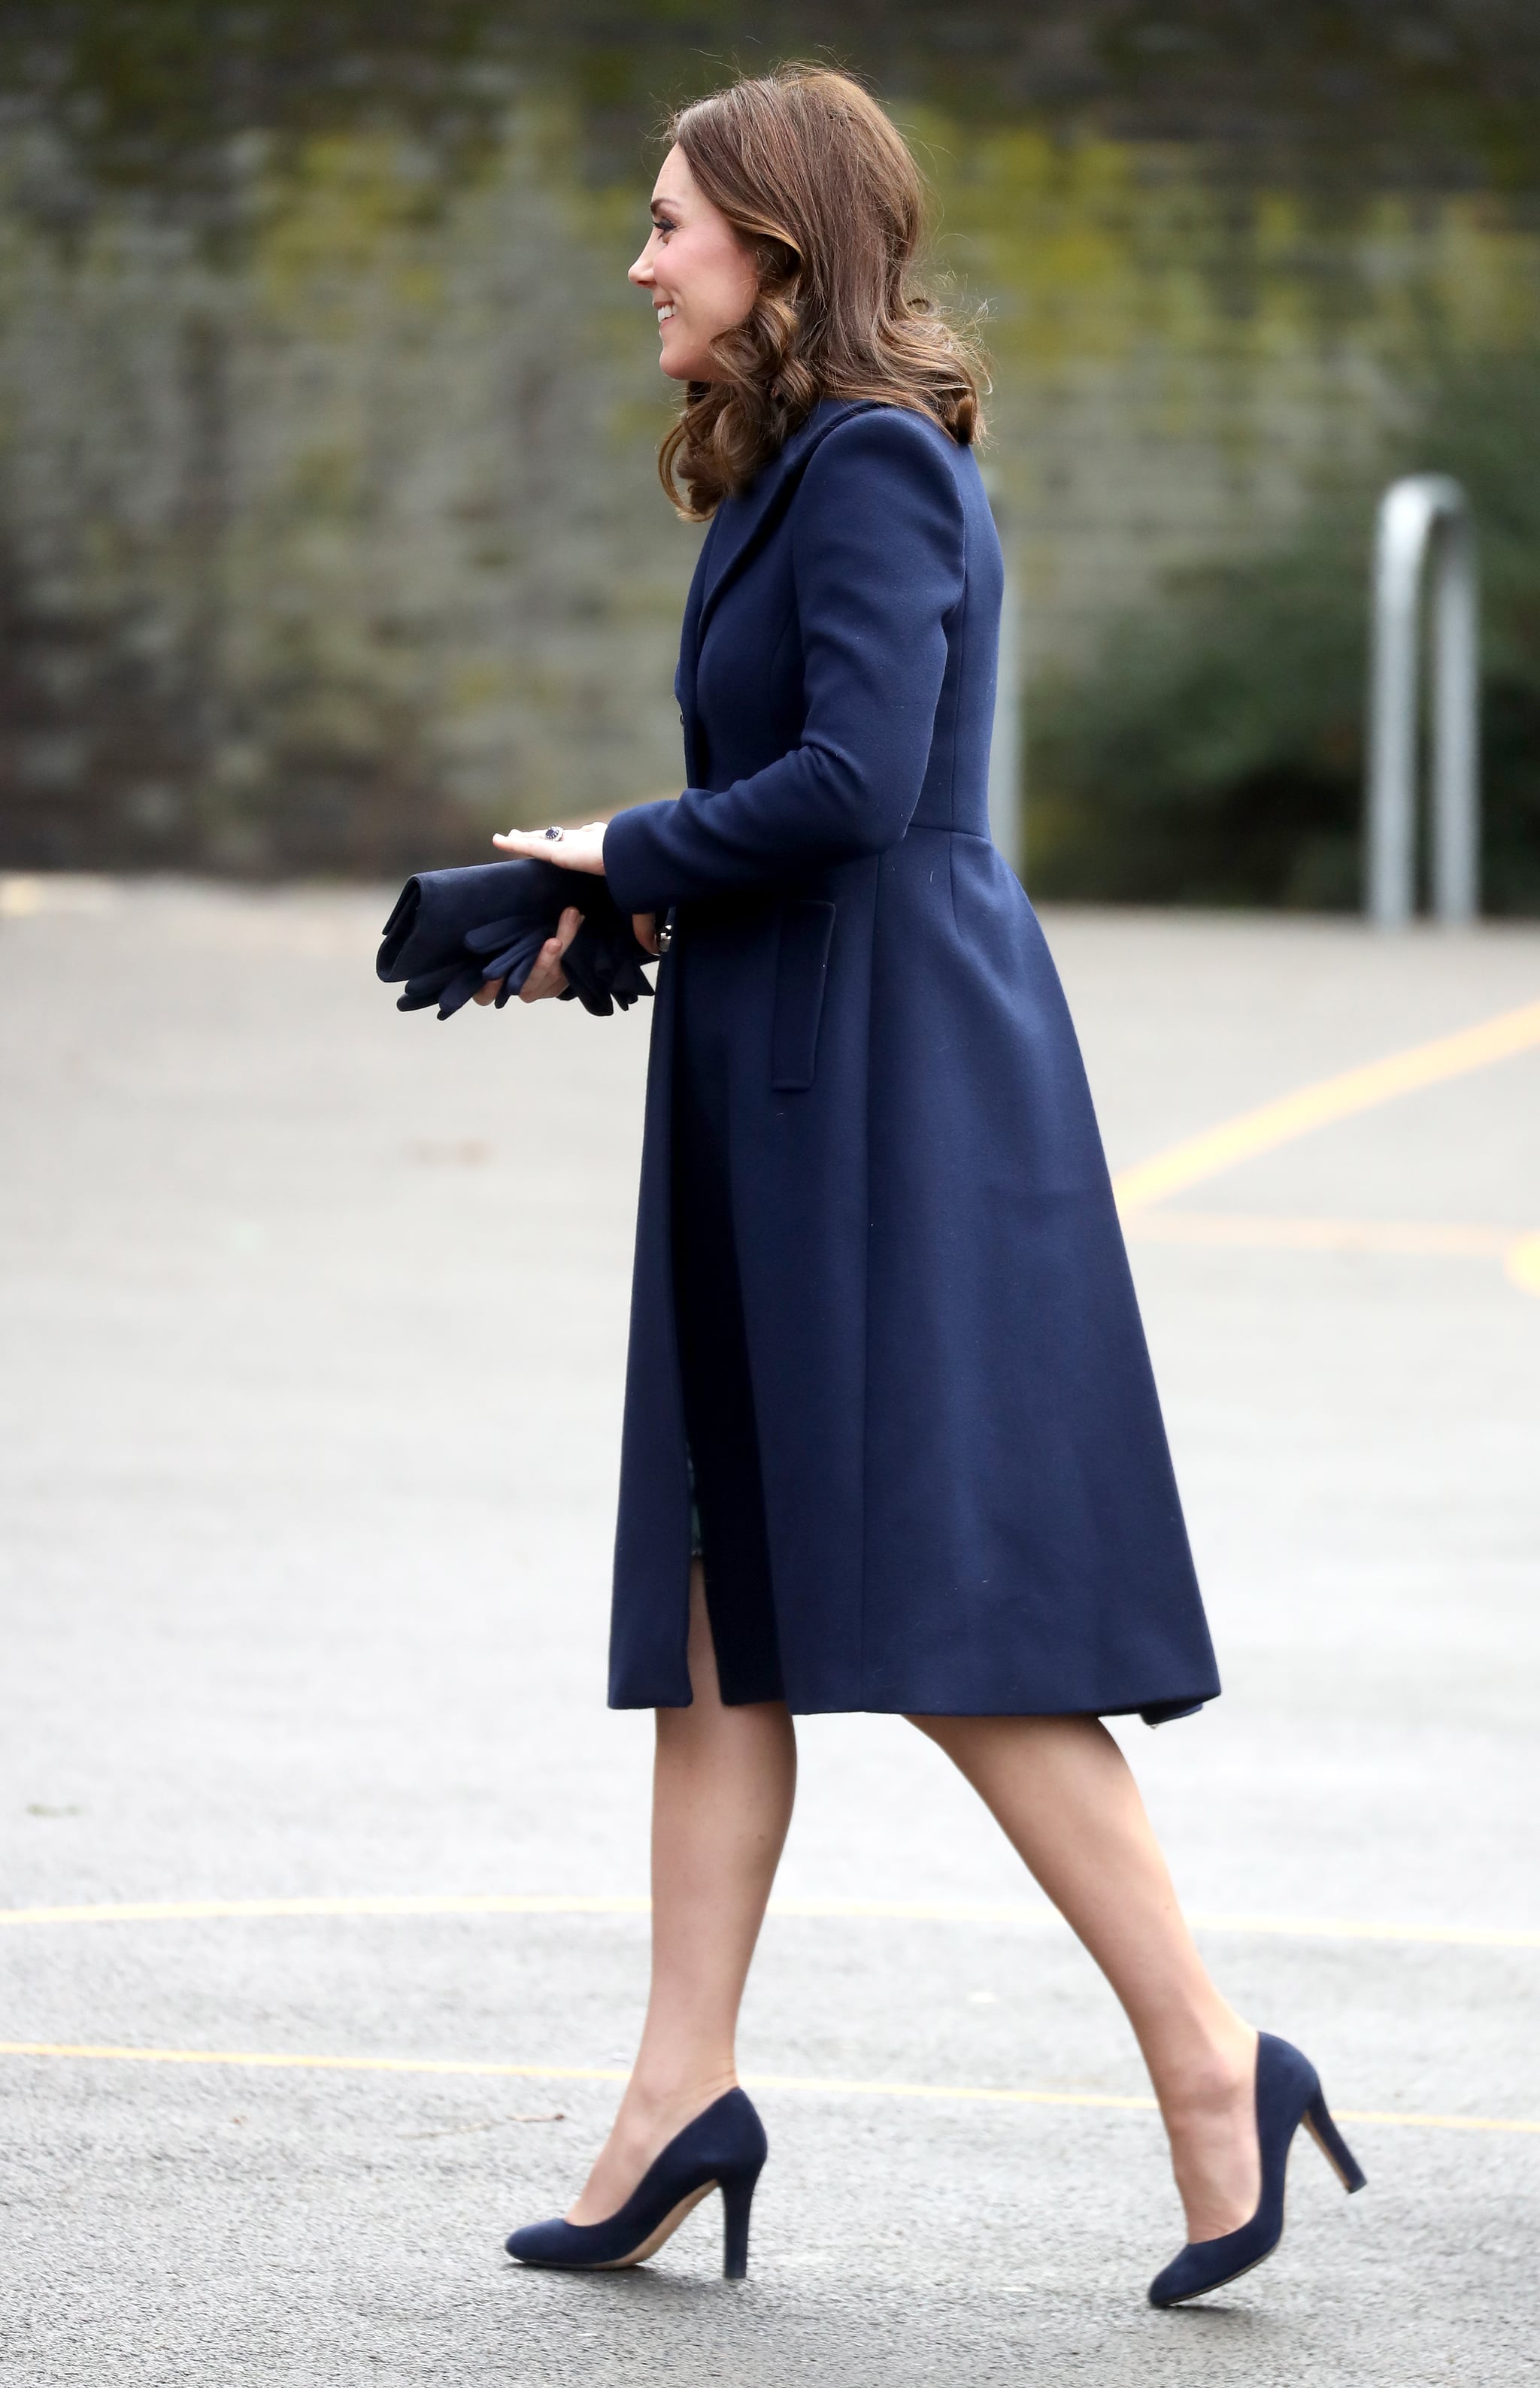 Kate Middleton's Blue Hobbs Coat